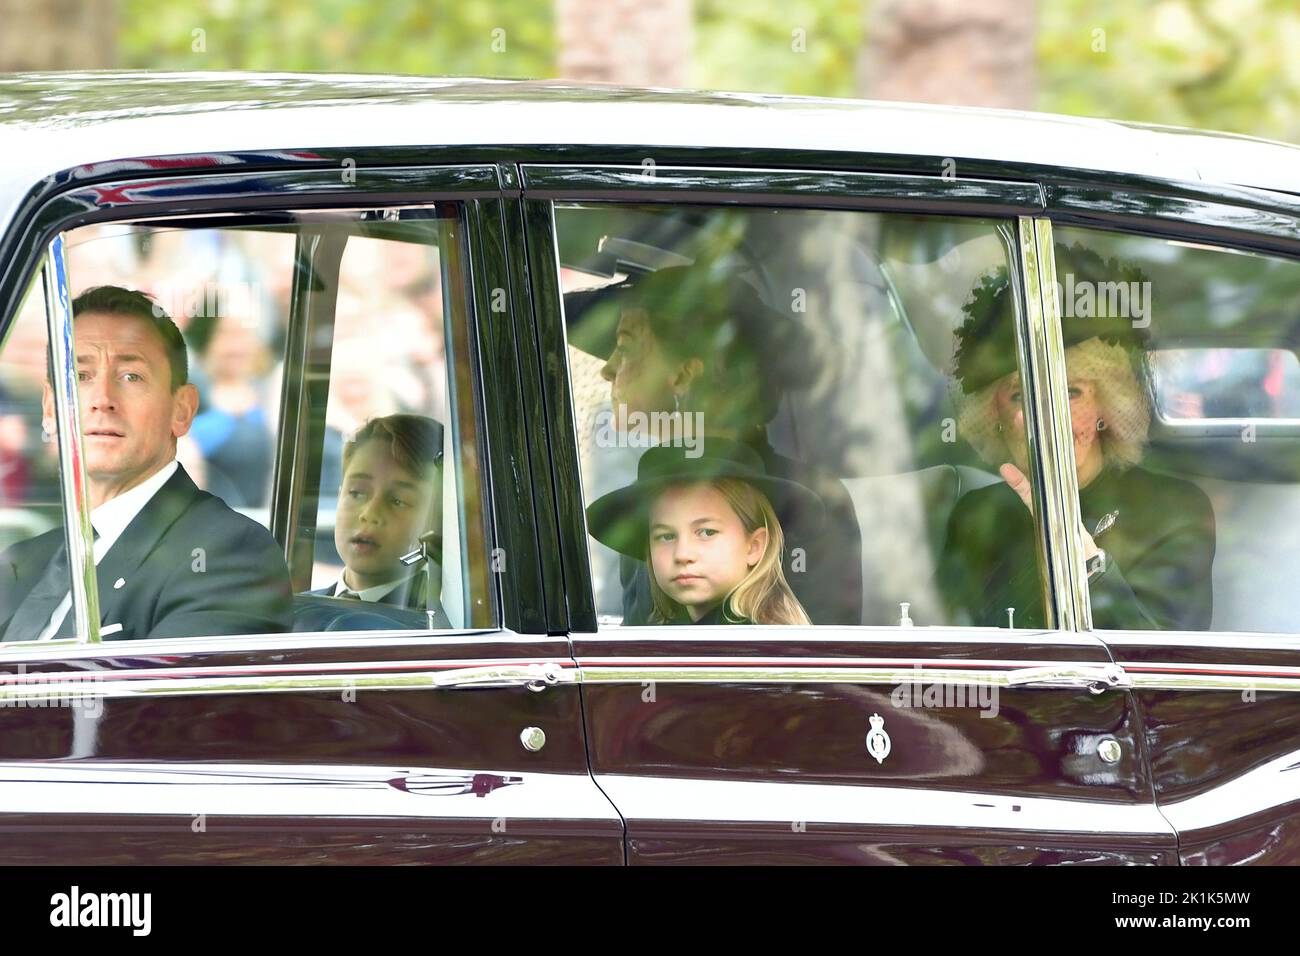 La princesse Charlotte, le prince George, la princesse de Galles et la reine Consort sont vus dans le centre commercial, dans le centre de Londres, à l'arrivée des funérailles d'État de la reine Elizabeth II lundi. Date de la photo: Lundi 19 septembre 2022. Banque D'Images